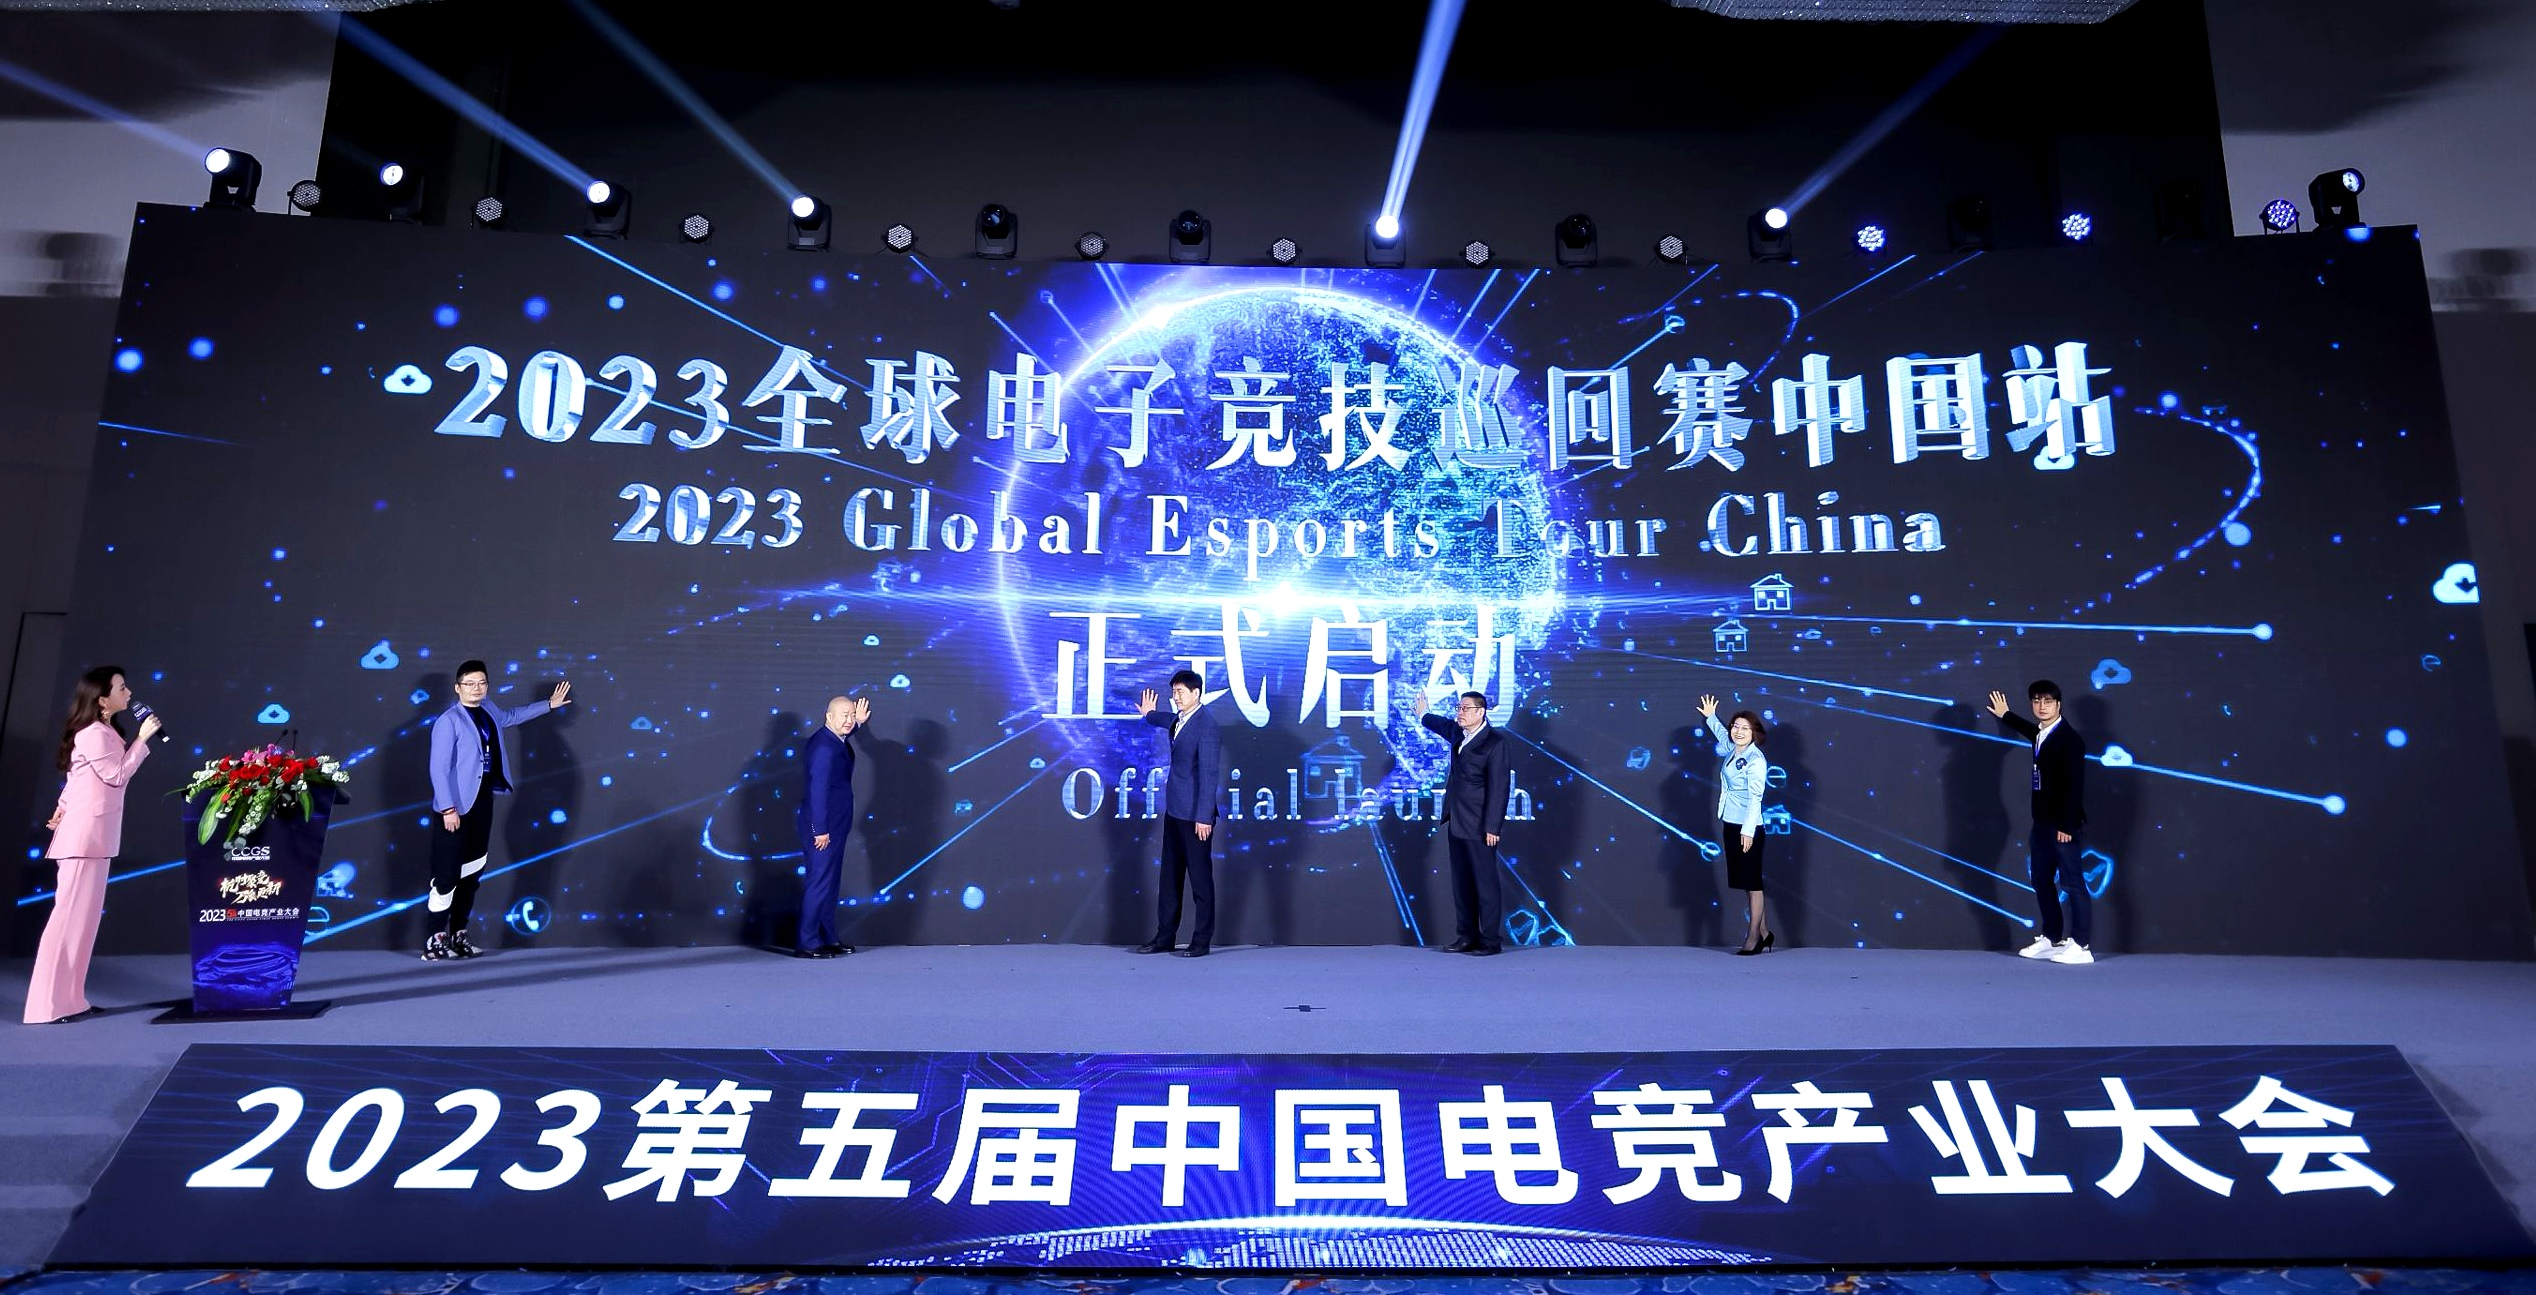 盛大启动，竞暴来袭｜2023全球电子竞技巡回赛首次落地中国